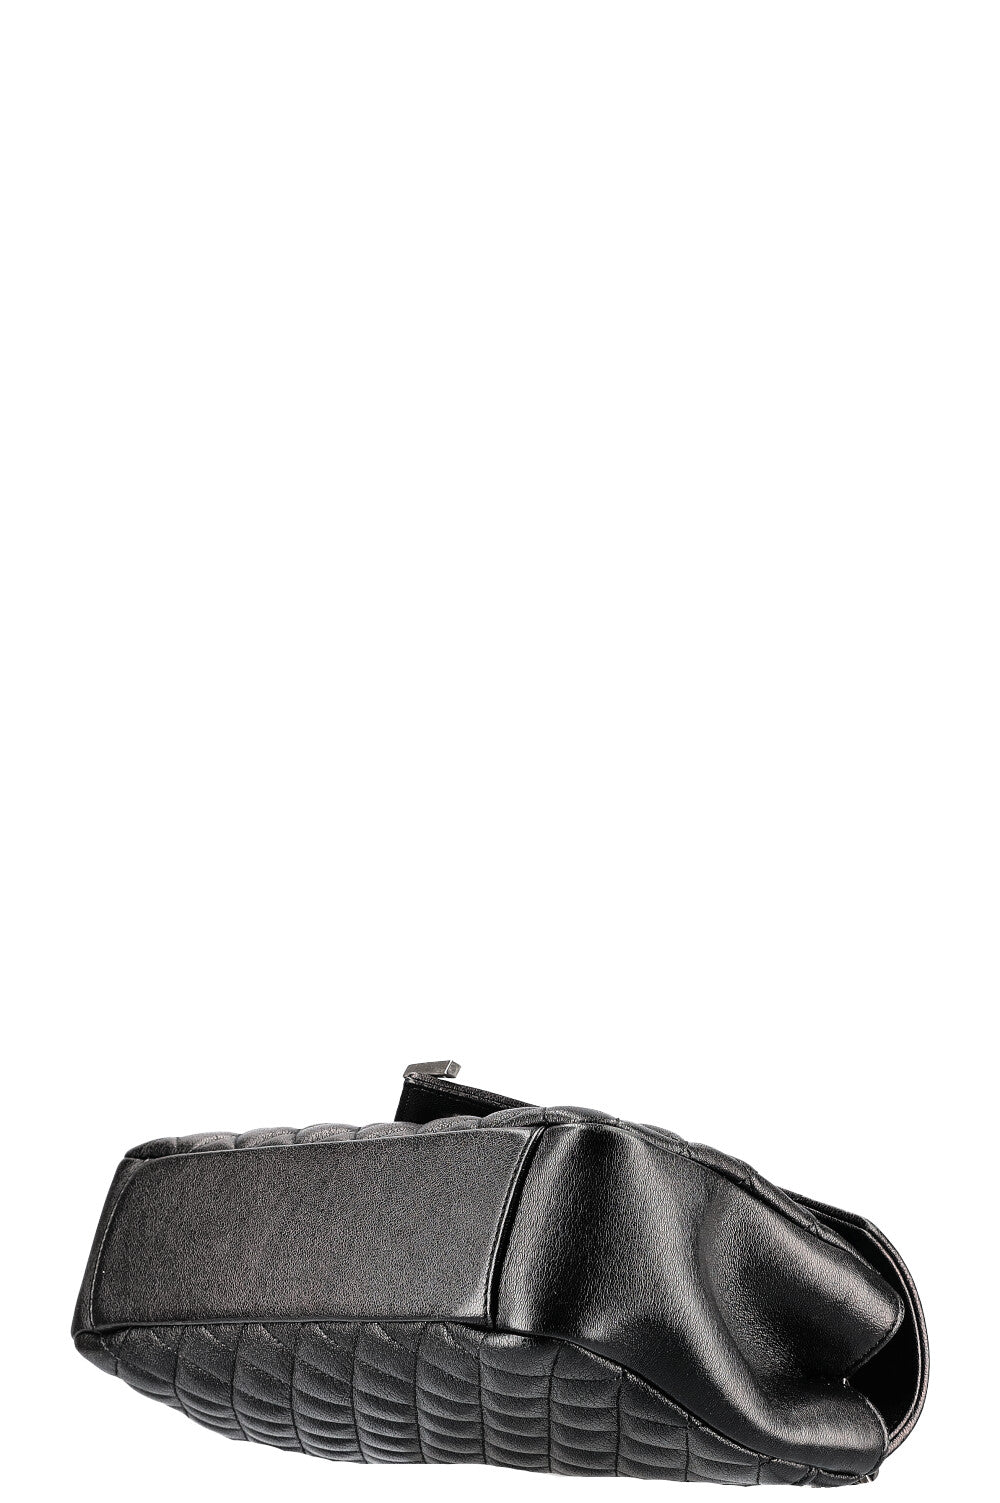 SAINT LAURENT College Bag Medium Quilted Black